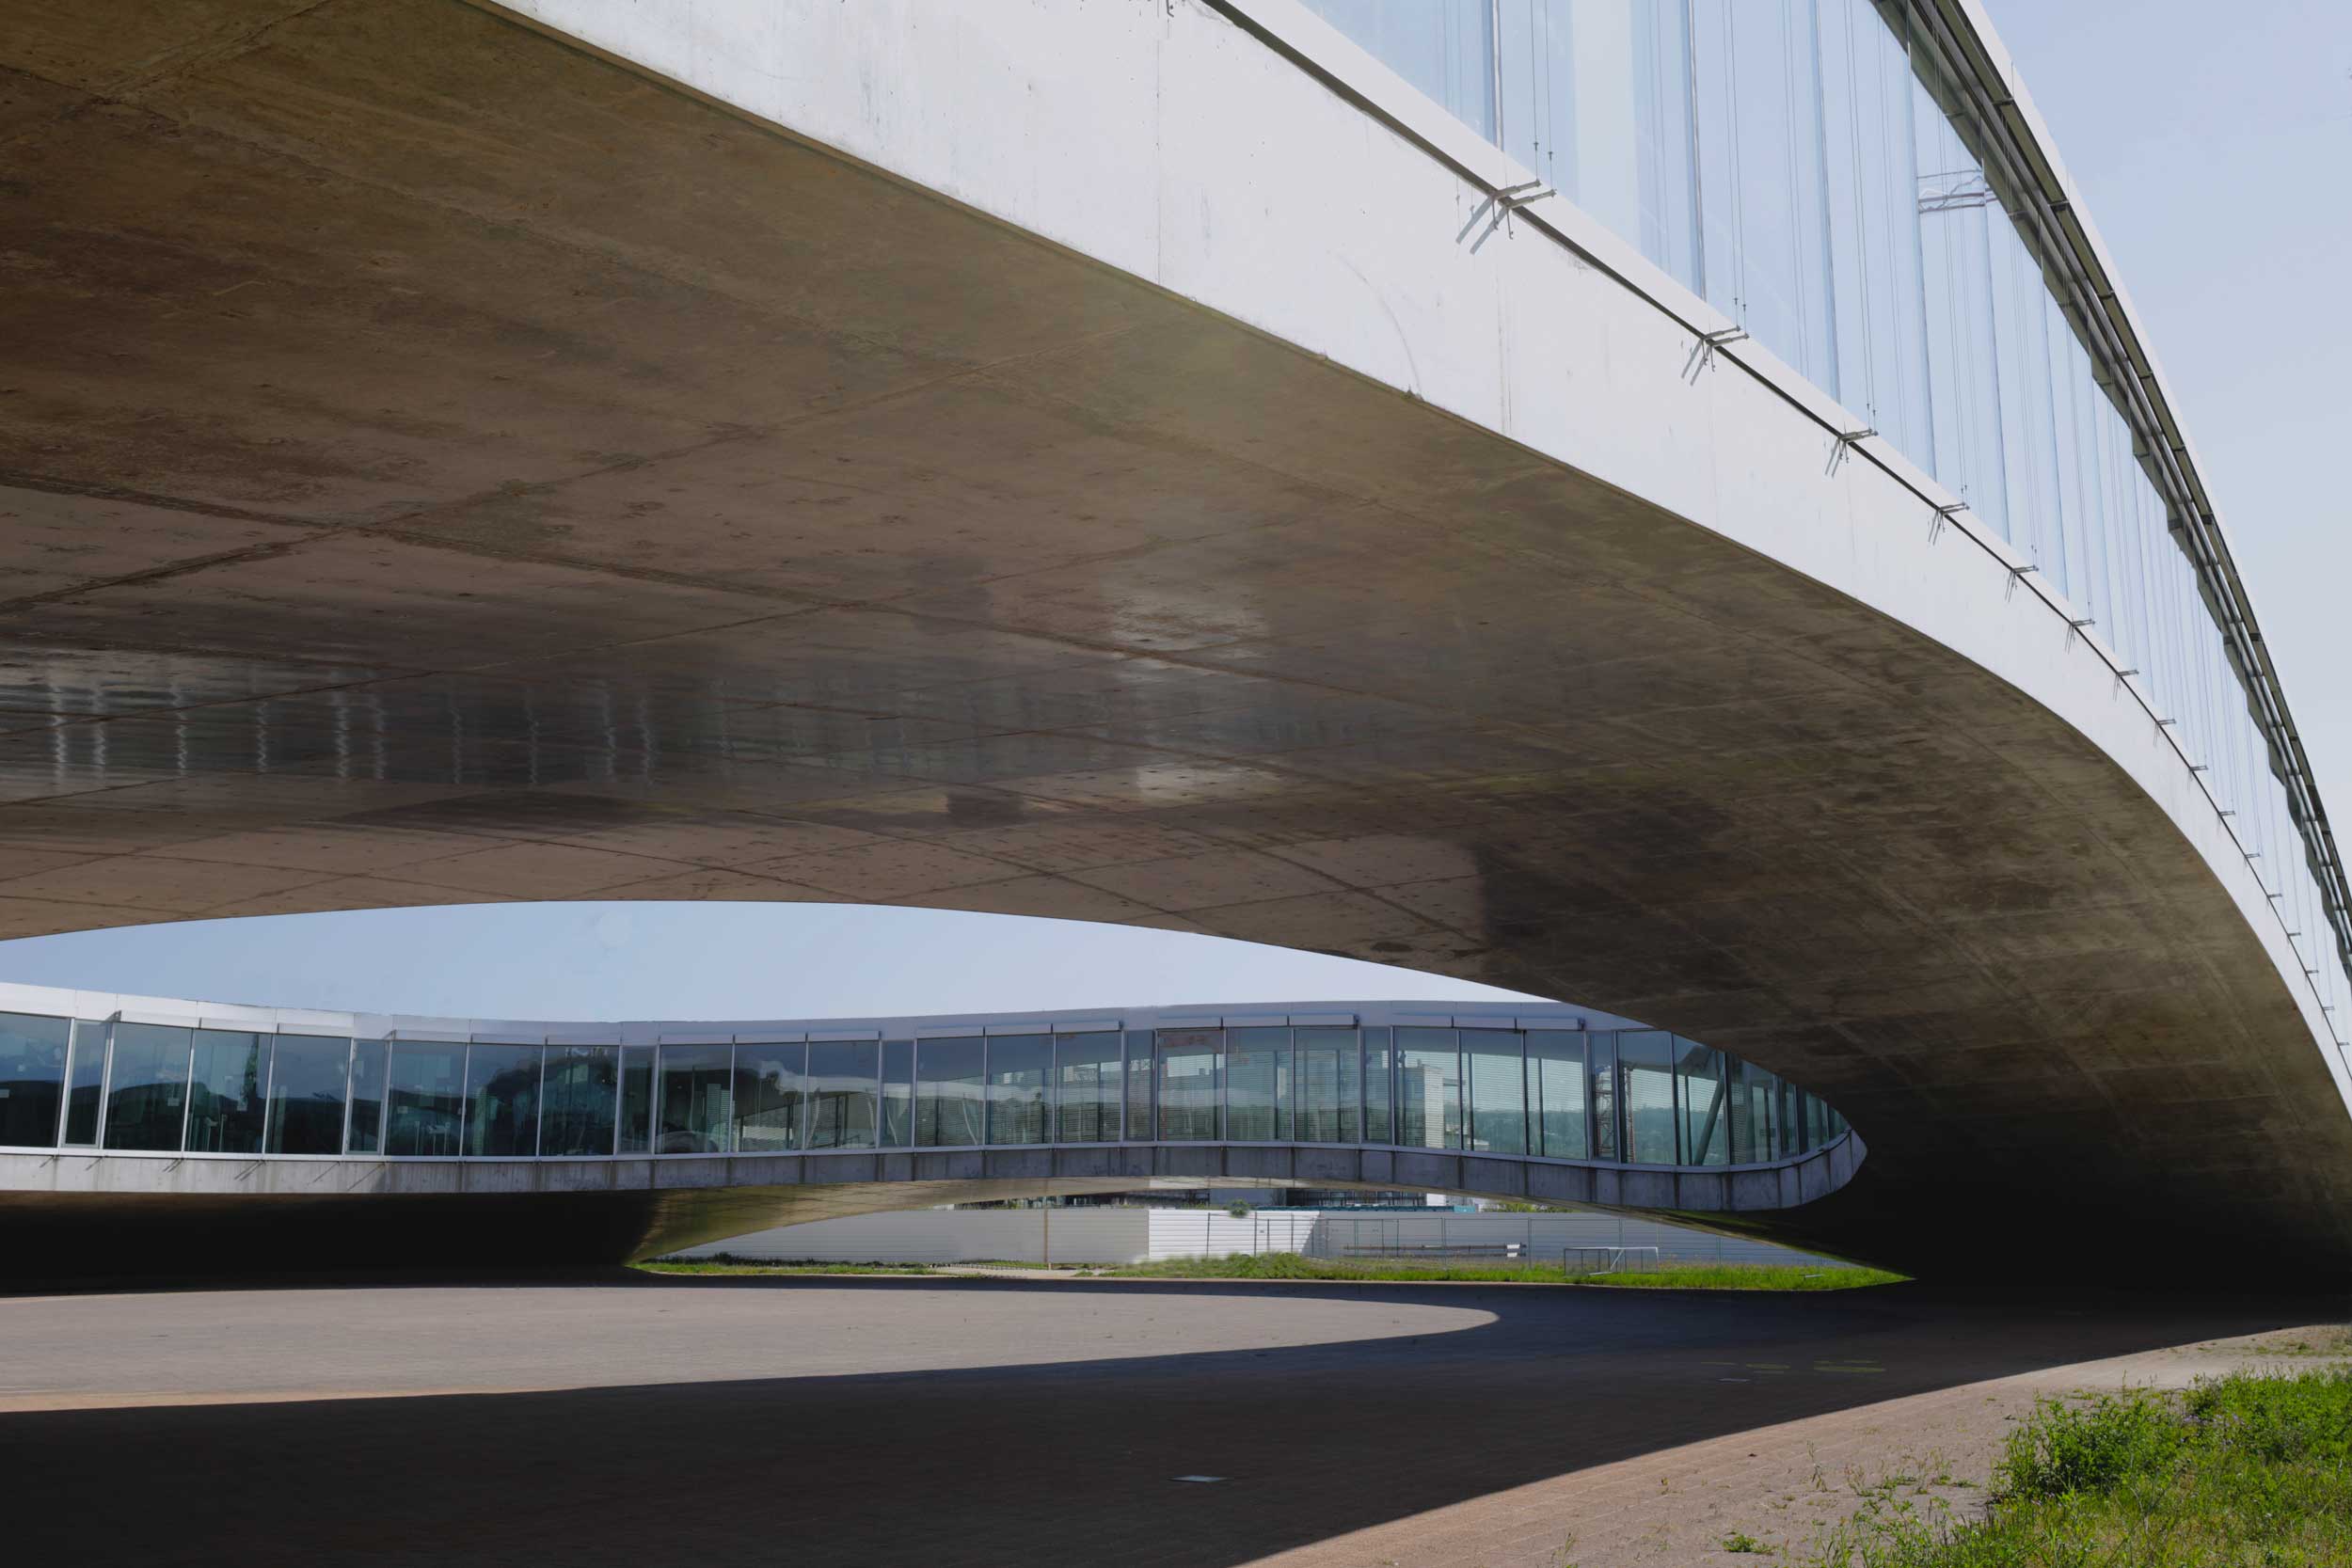 Architecture-Ecublens-Suisse-Beatrice-Paridant-de-Cauwere-RolexLC-2021-278A3669